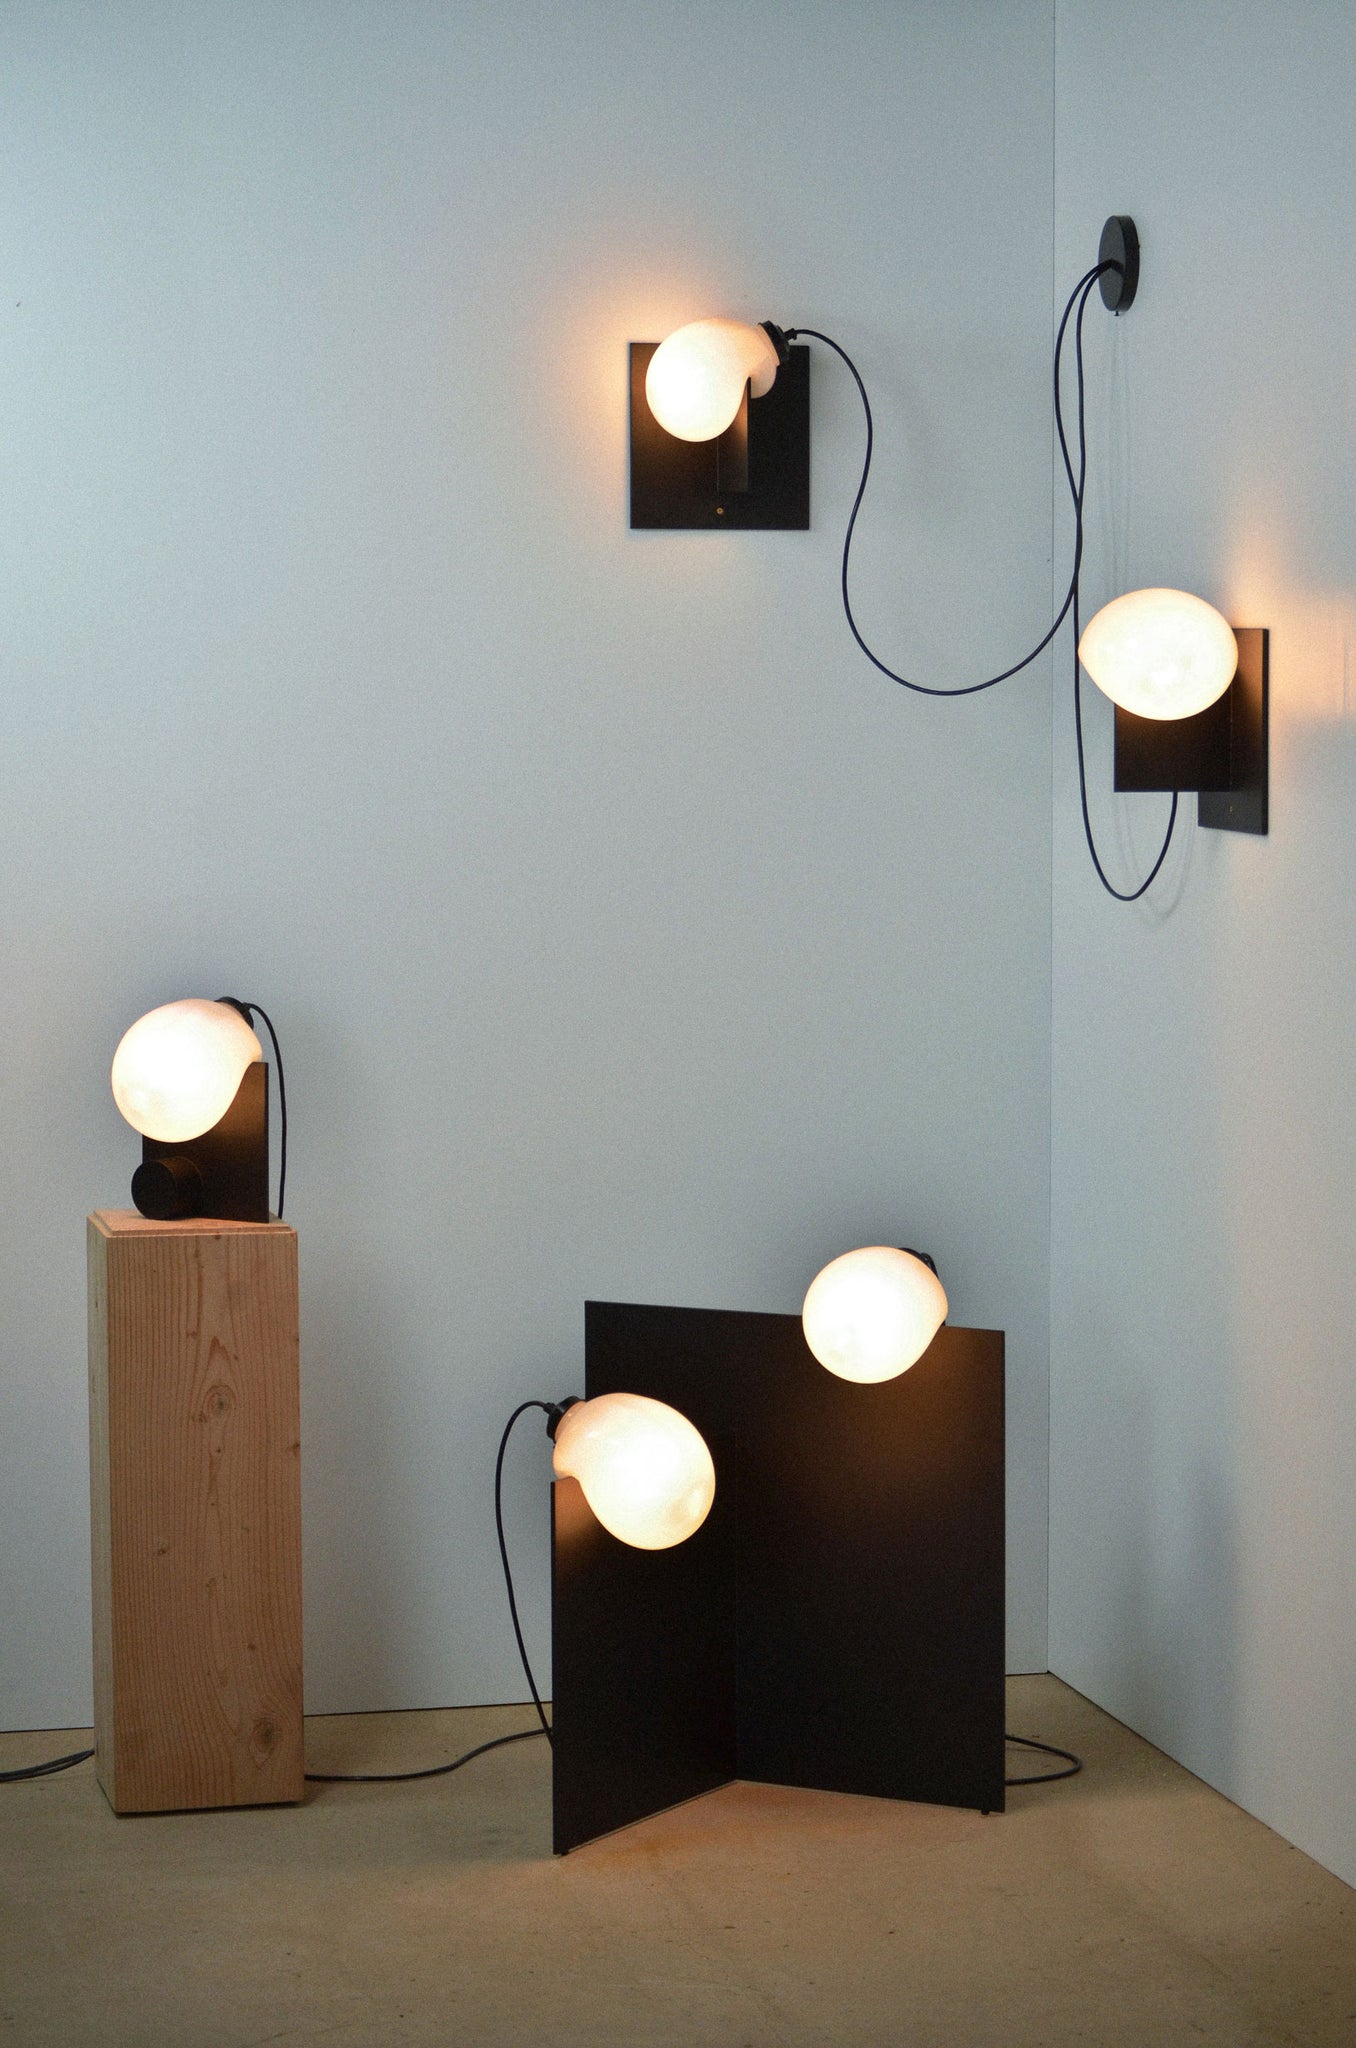 Bloop Floor Lamp, Bloop Table Lamp, and two Bloop Sconces shot in a corner